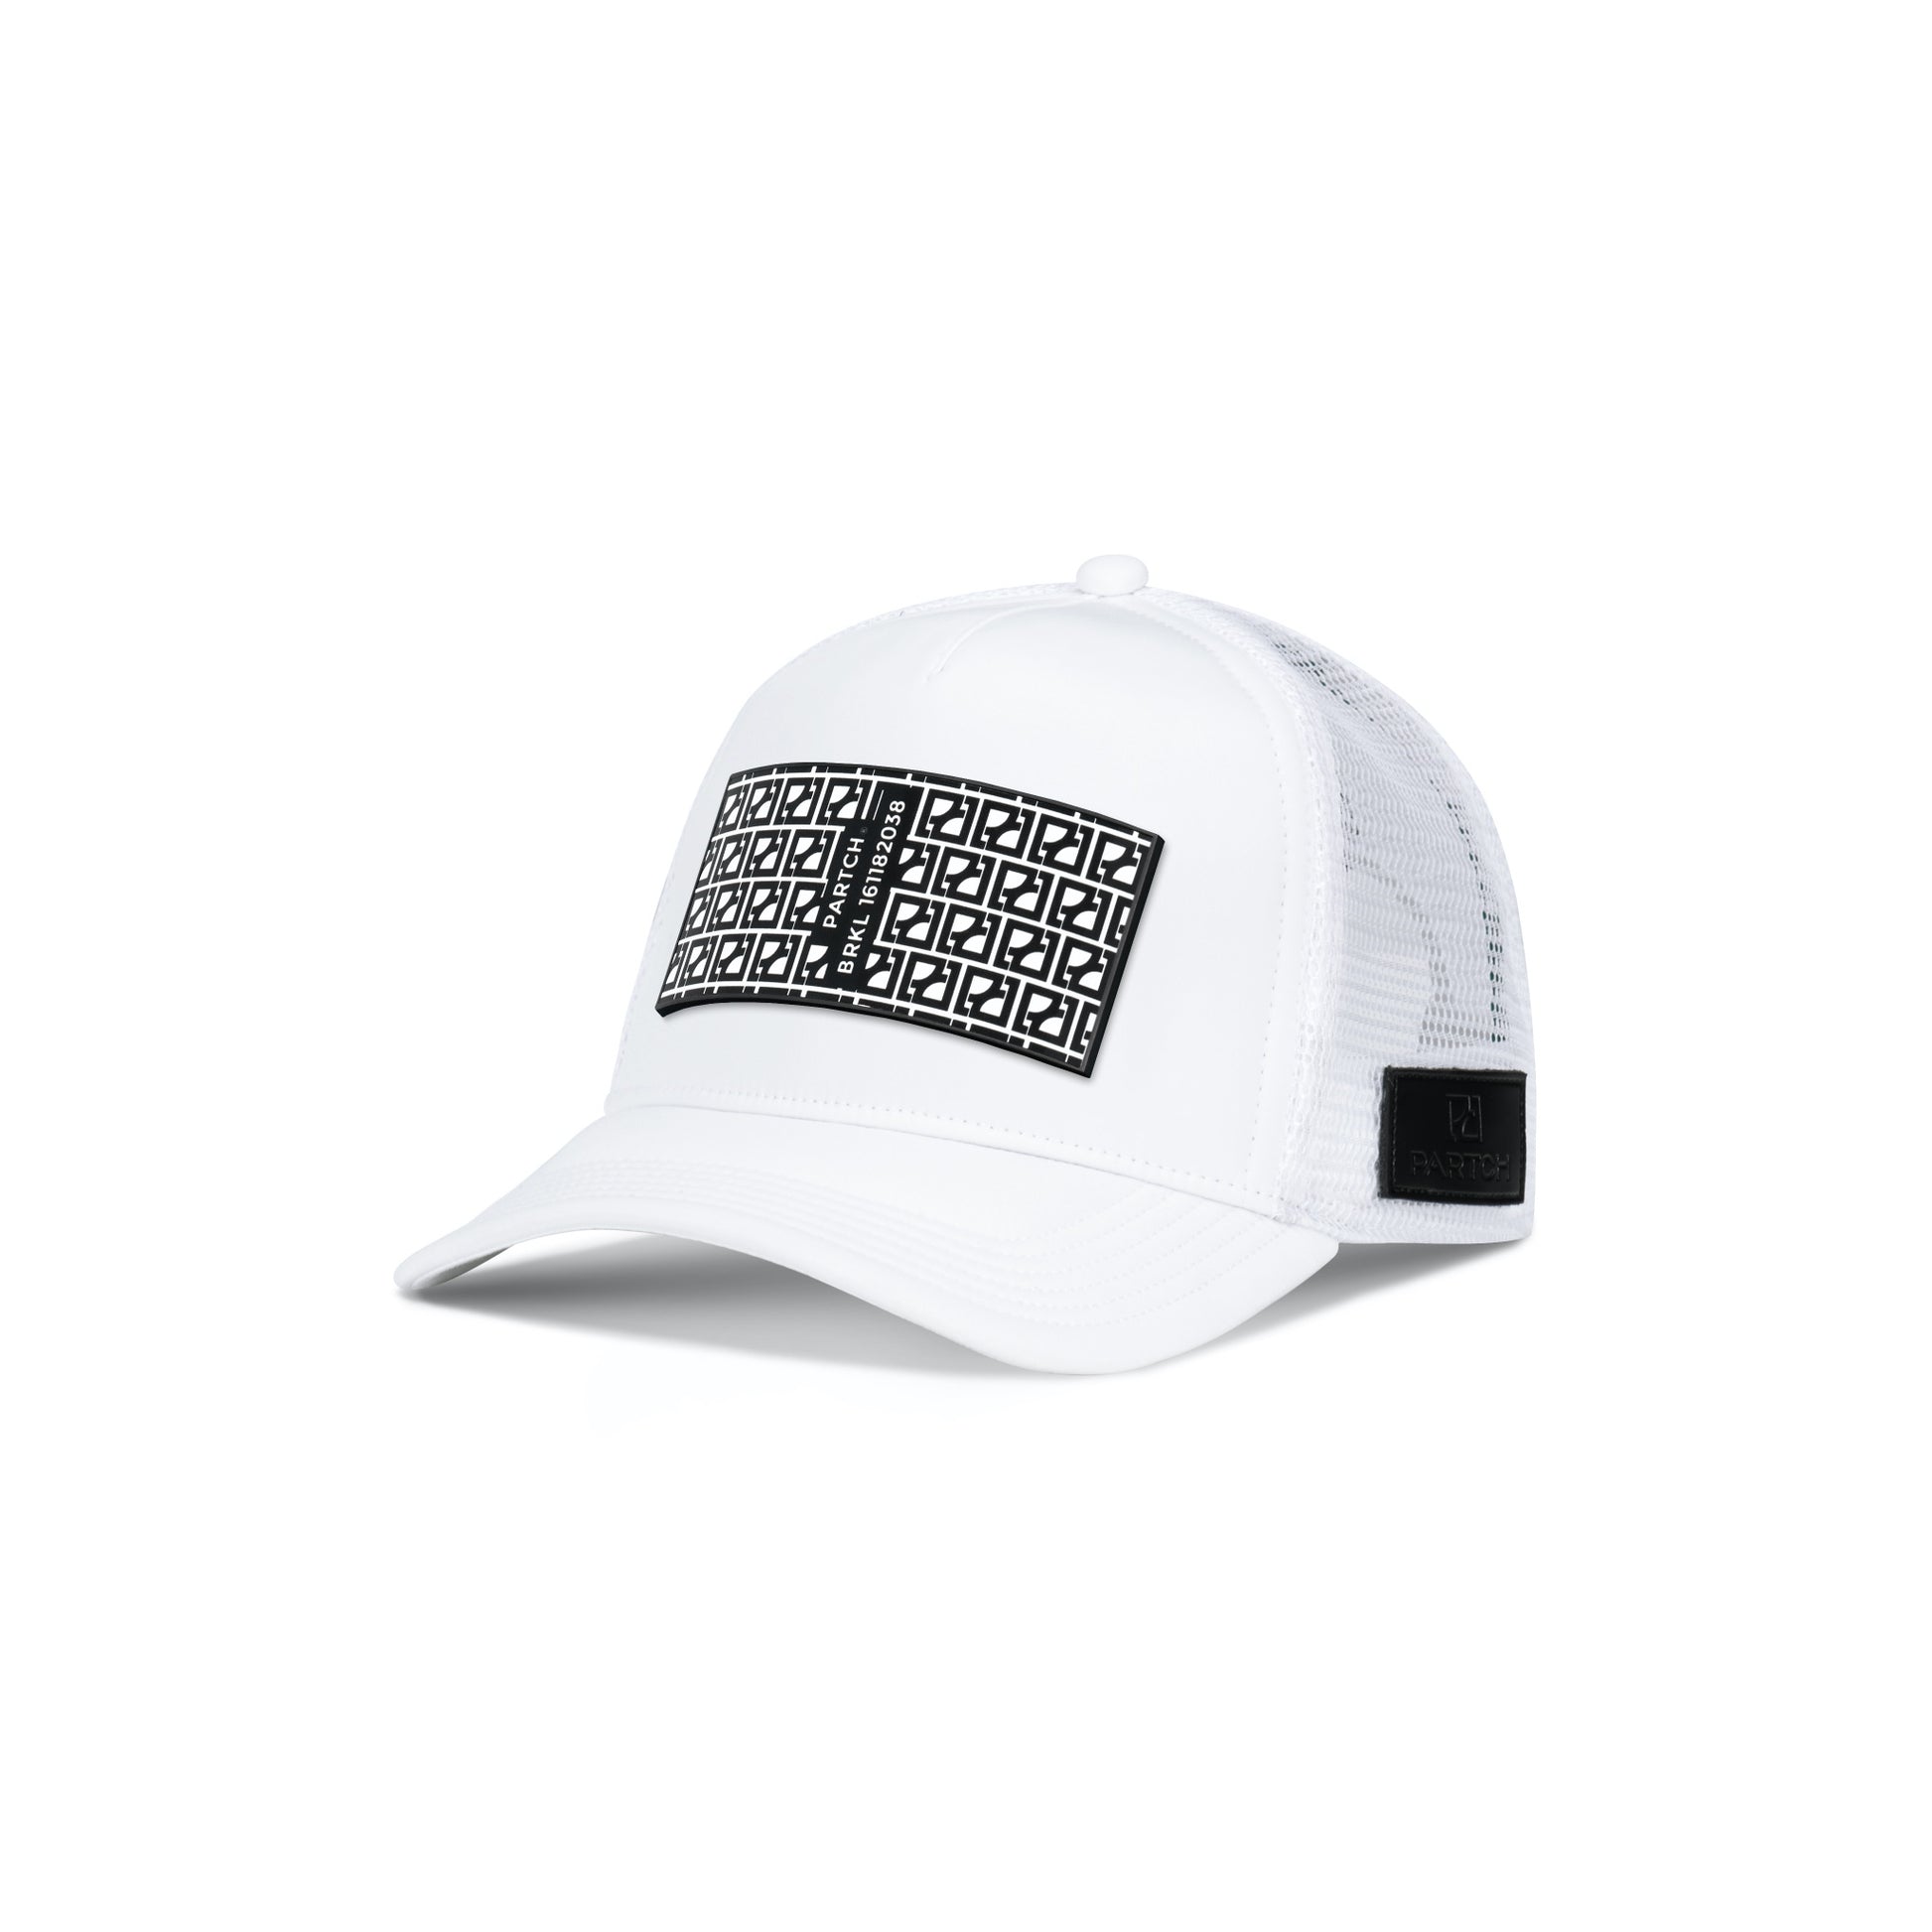 Partch Trucker Hat White removable BRKL Partch clip